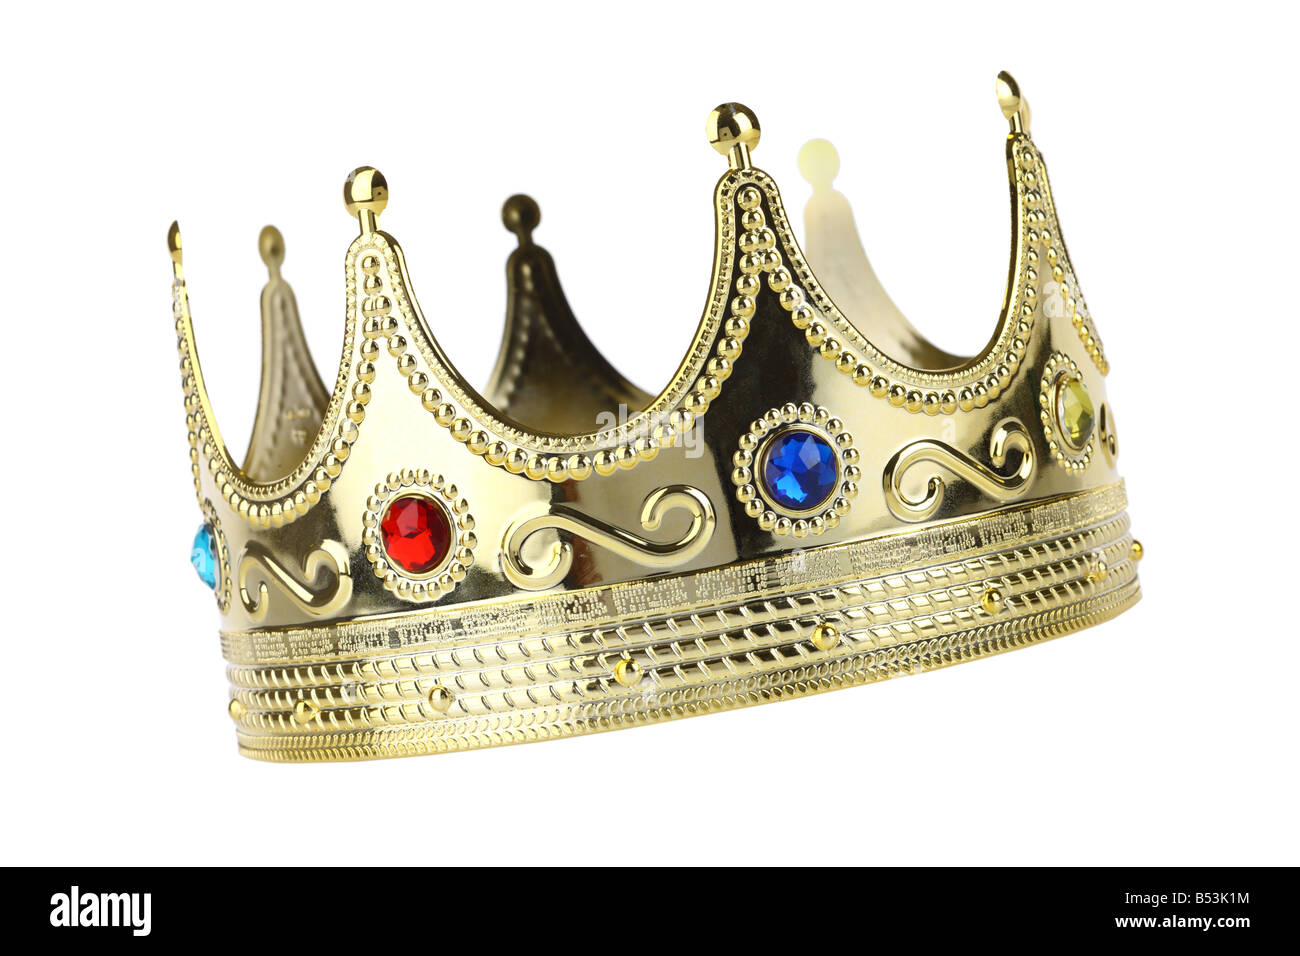 Kings crown intaglio isolato su sfondo bianco Foto Stock